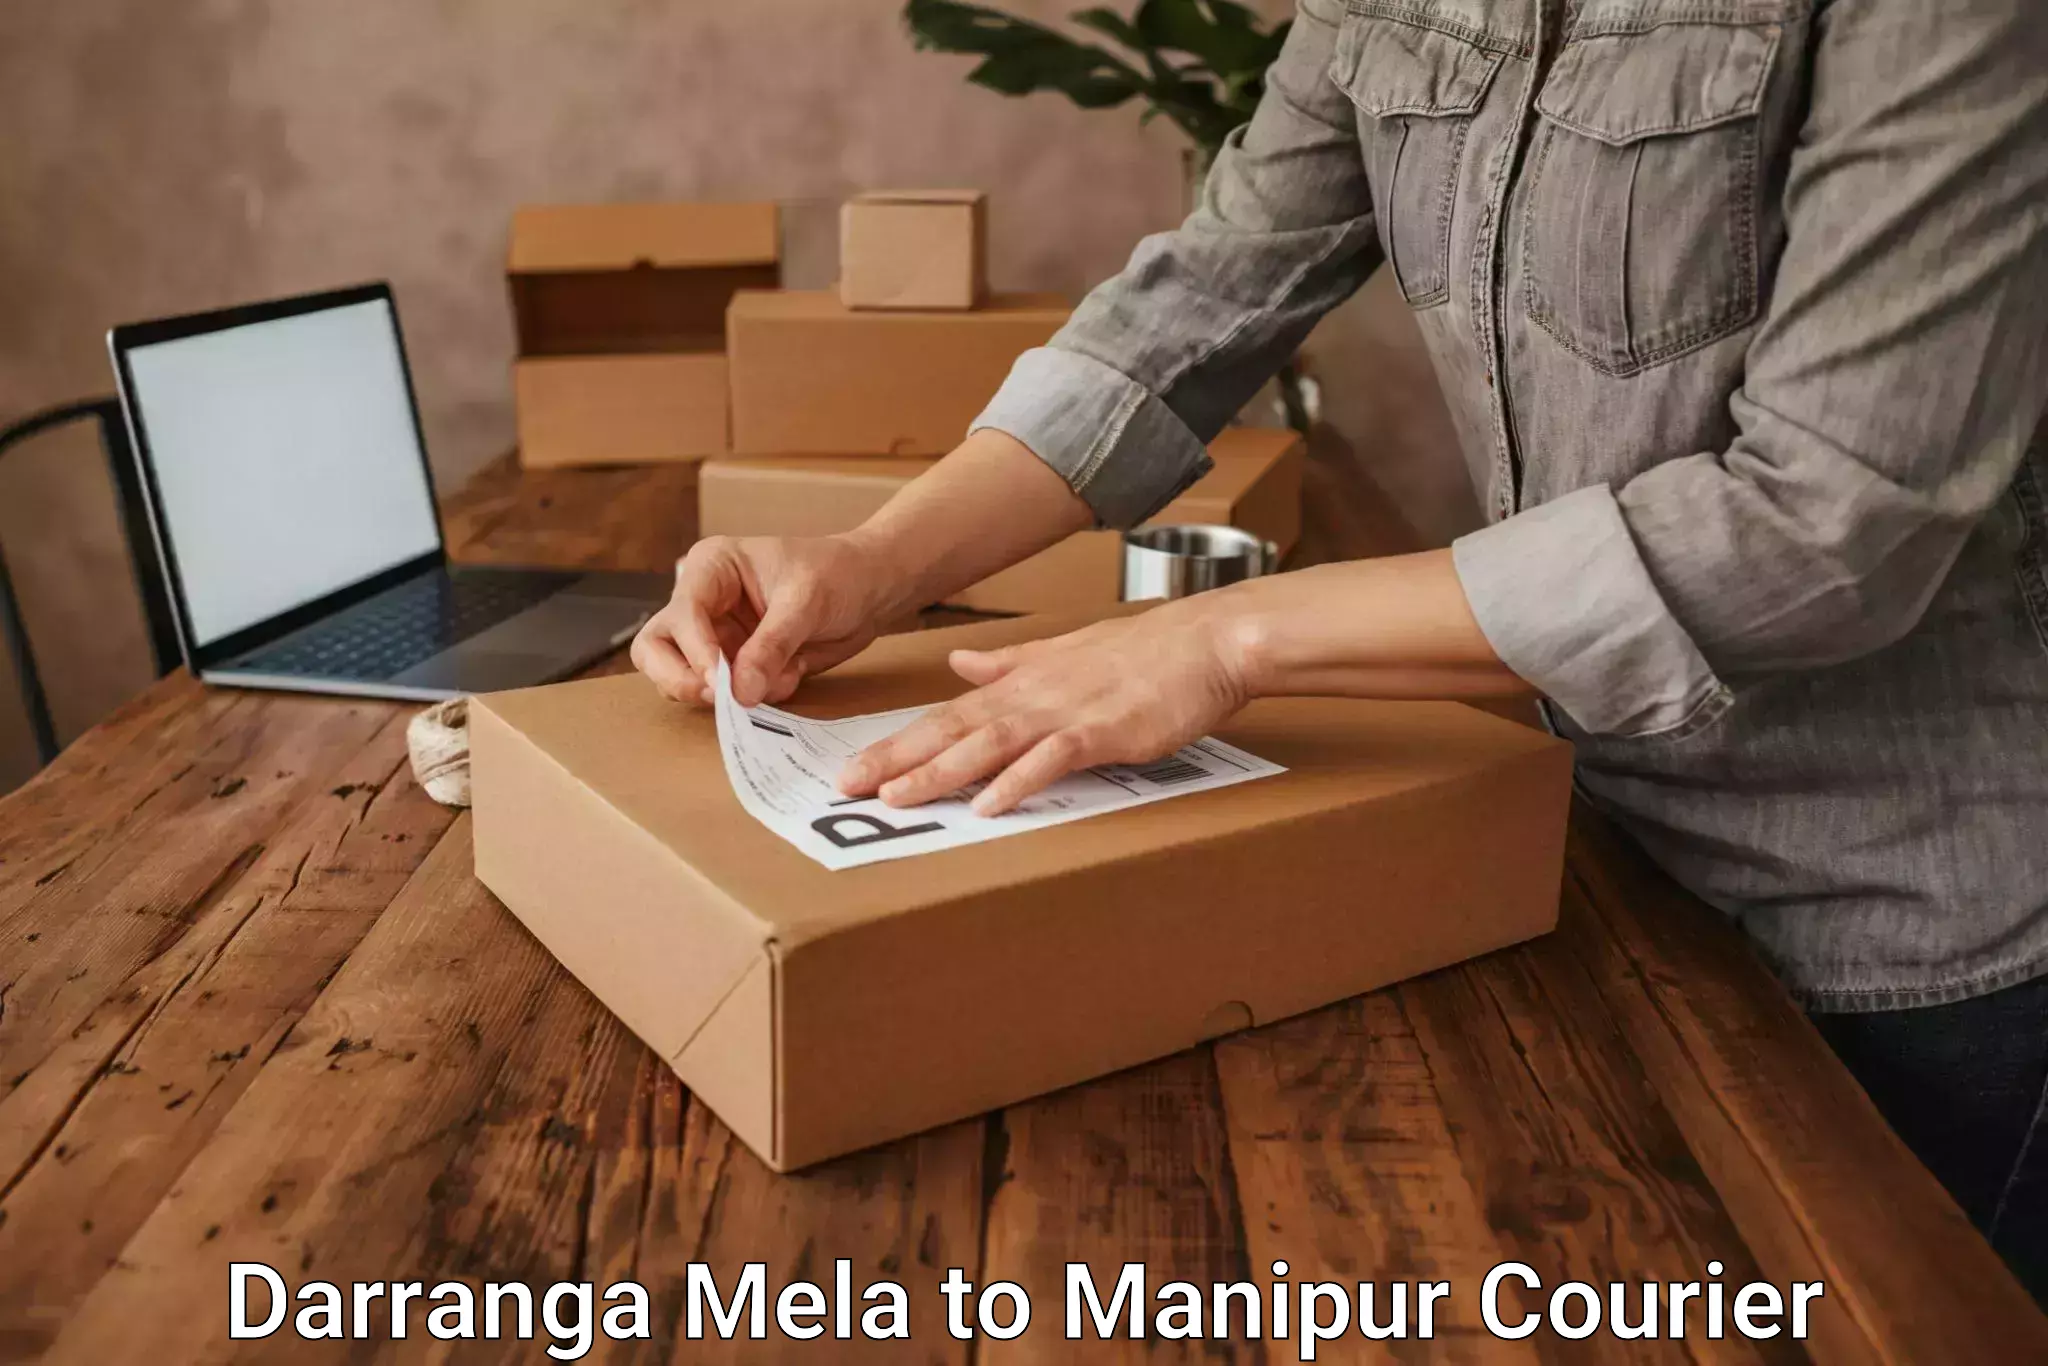 Reliable delivery network in Darranga Mela to Senapati